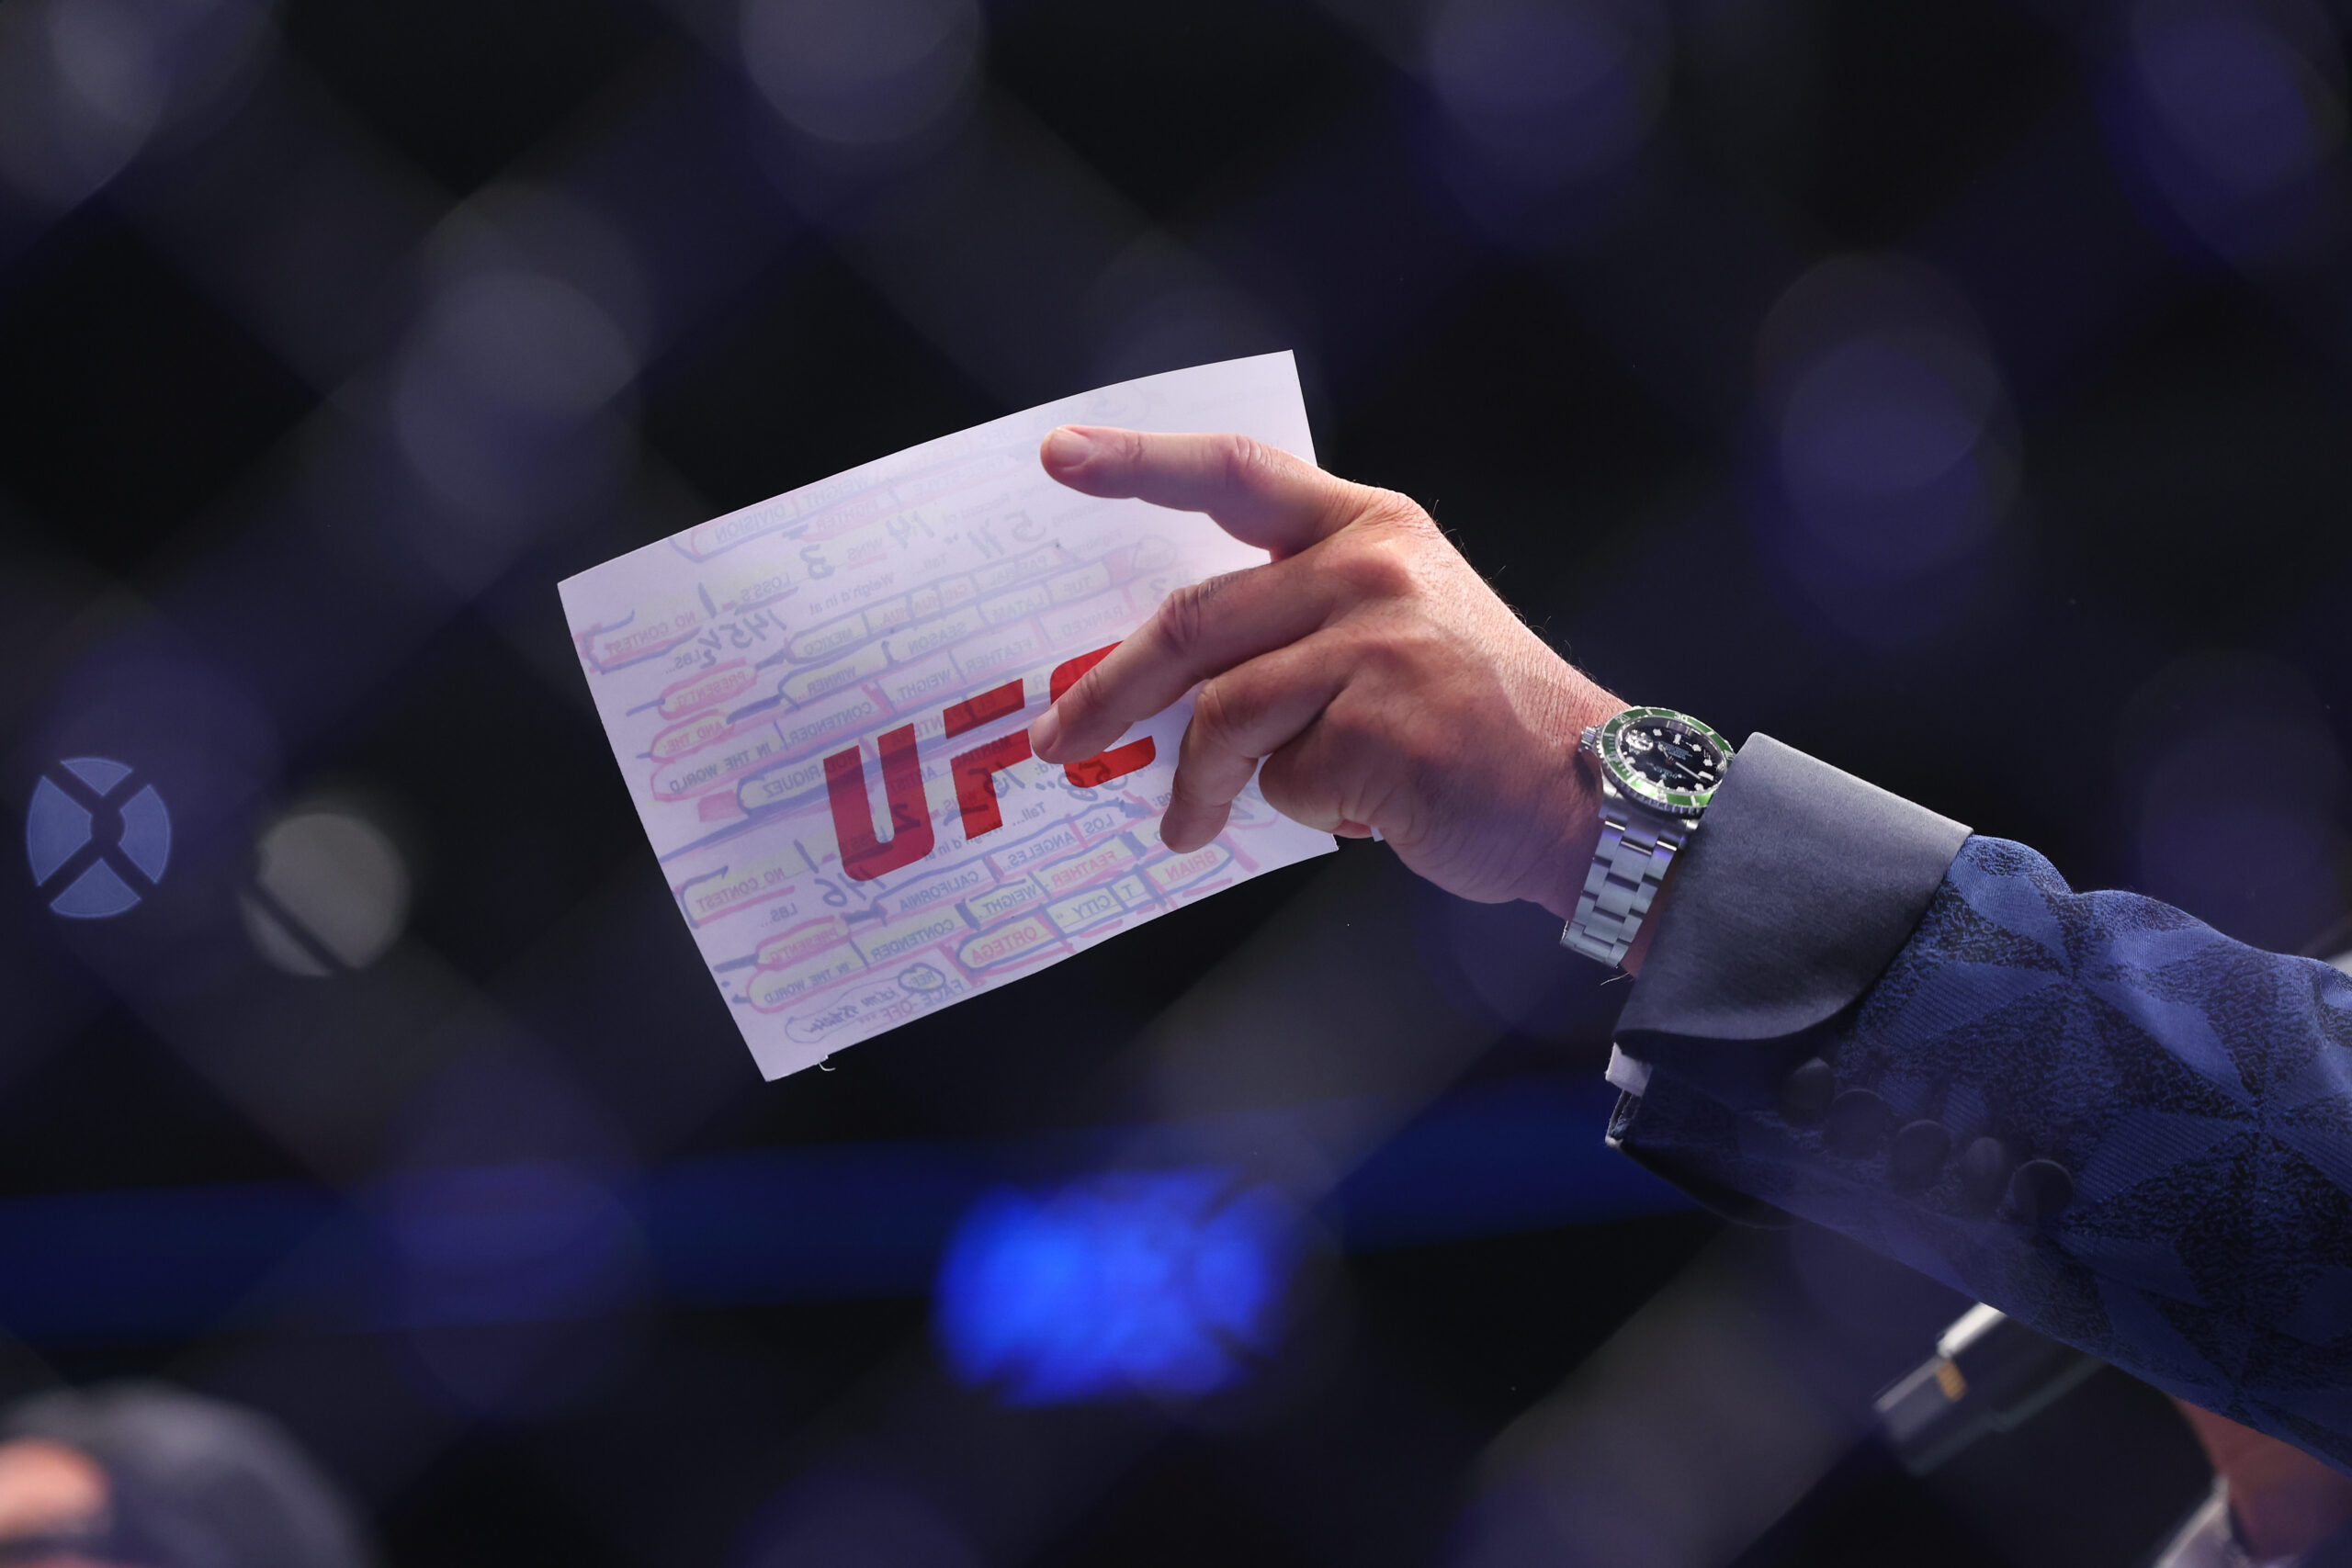 Grafika przedstawia kartkę konferansjera UFC - Bruce'a Buffera z napisem "UFC".